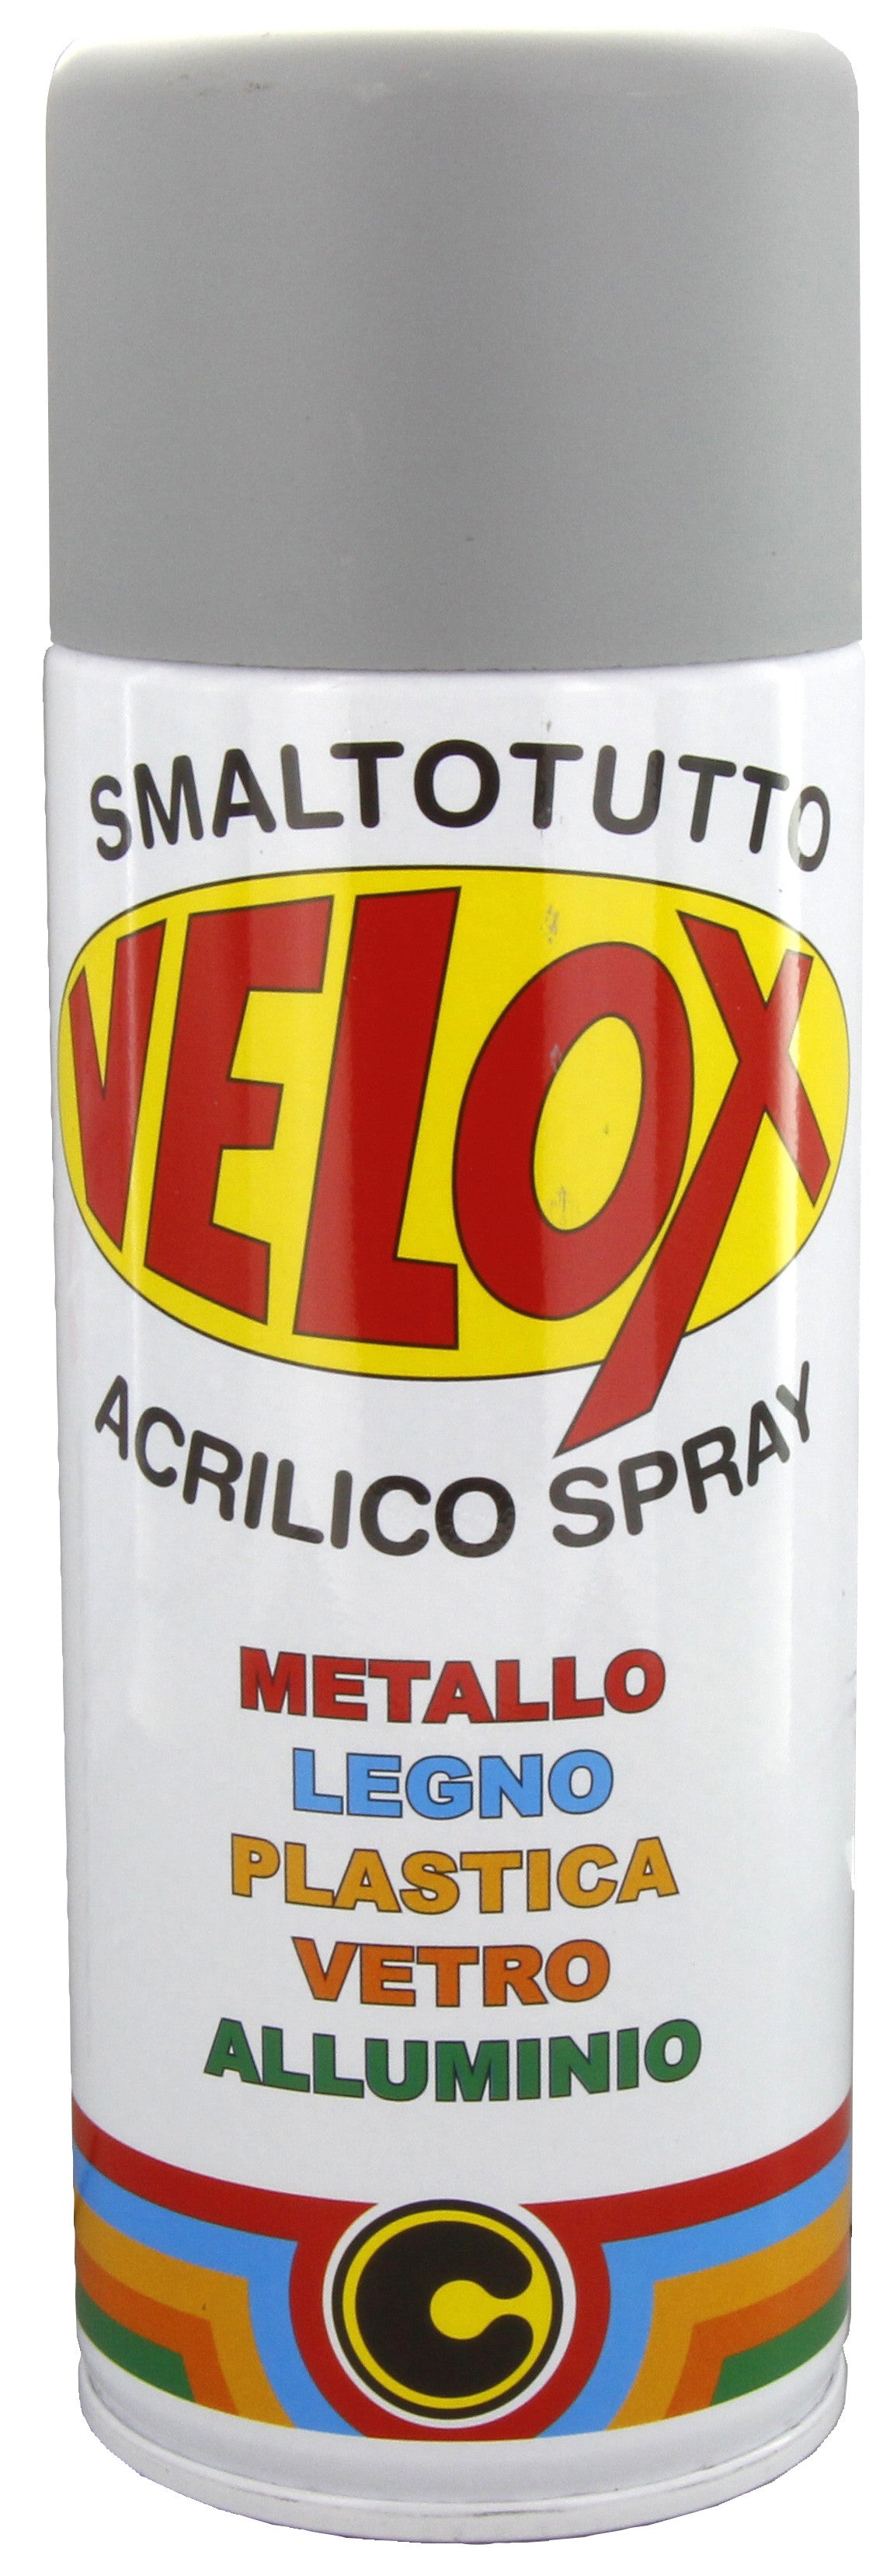 Velox spray antiruggine grigia ral 7004 ITAL G.E.T.E.